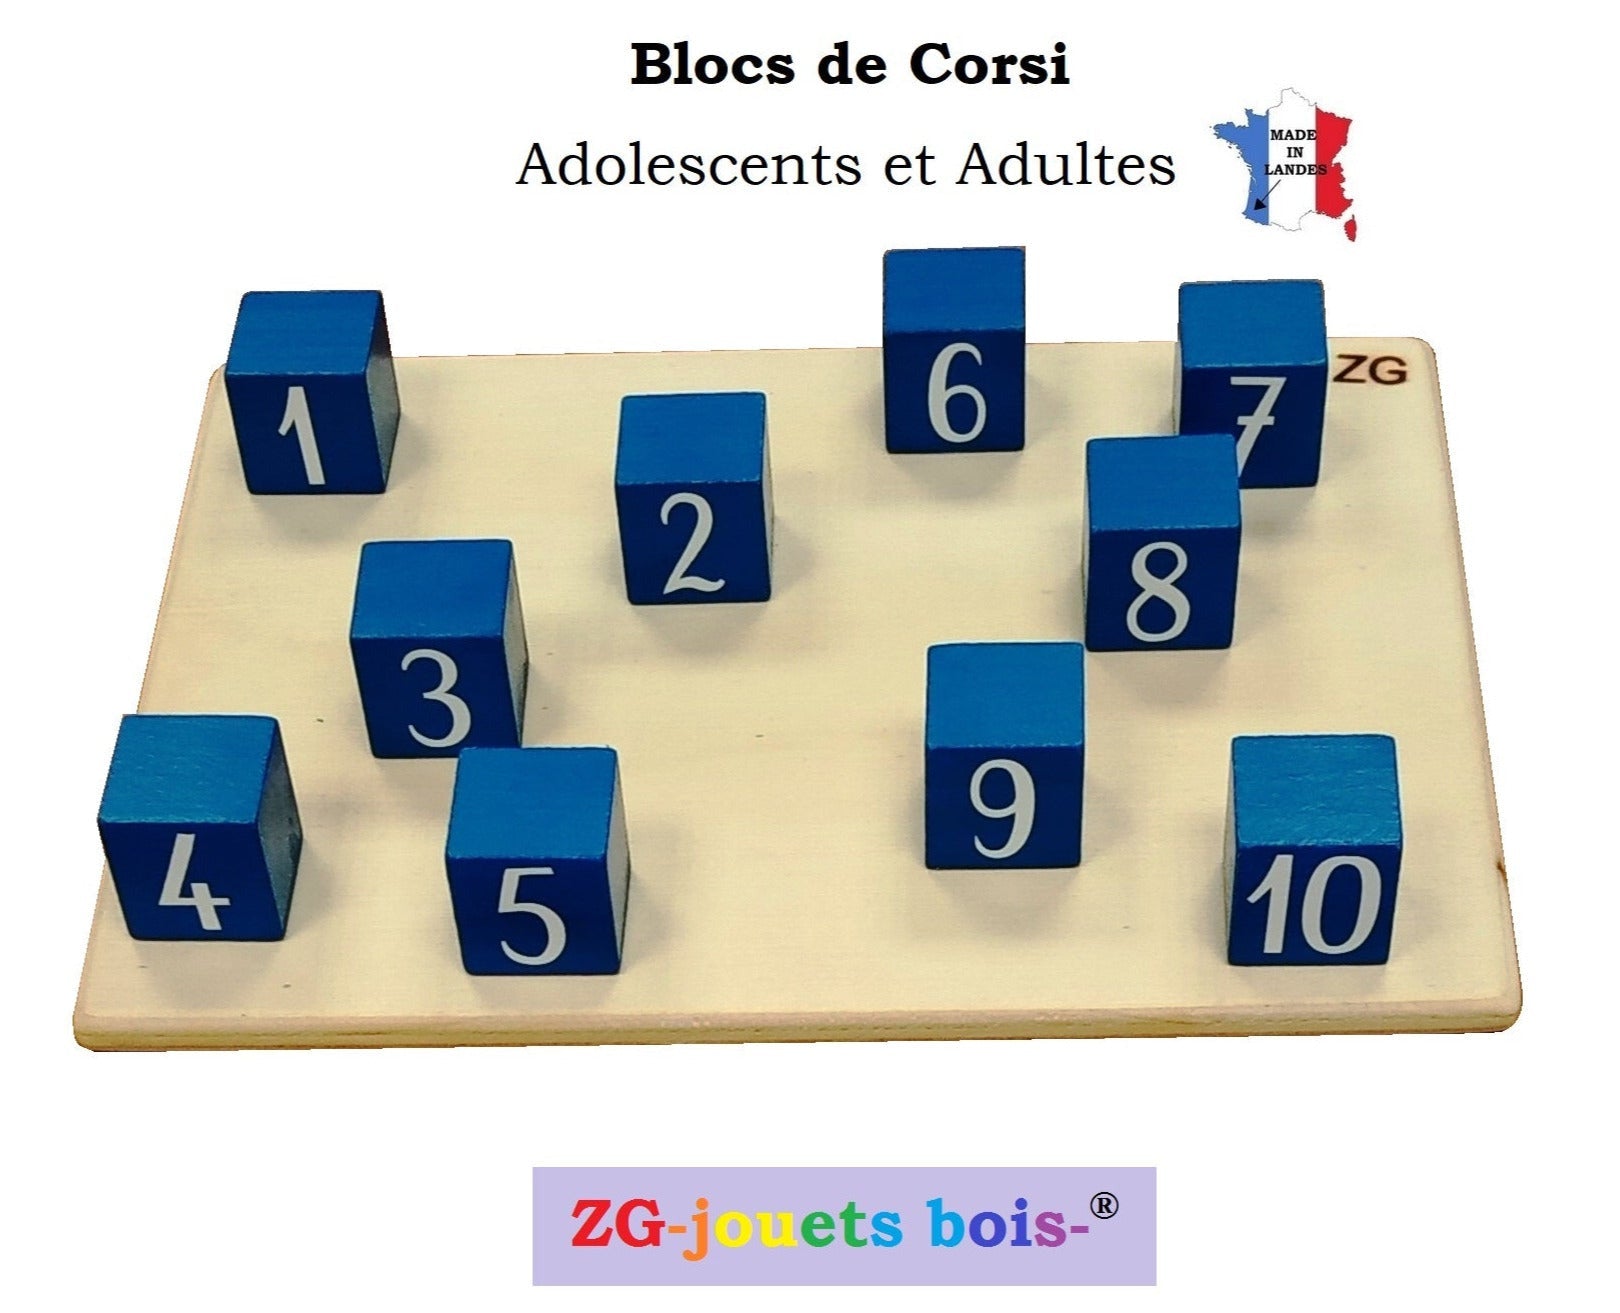 Blocs de Corsi, 10 cubes, pour adolescents et adultes, test tap-block et carte de séquences inscriptibles